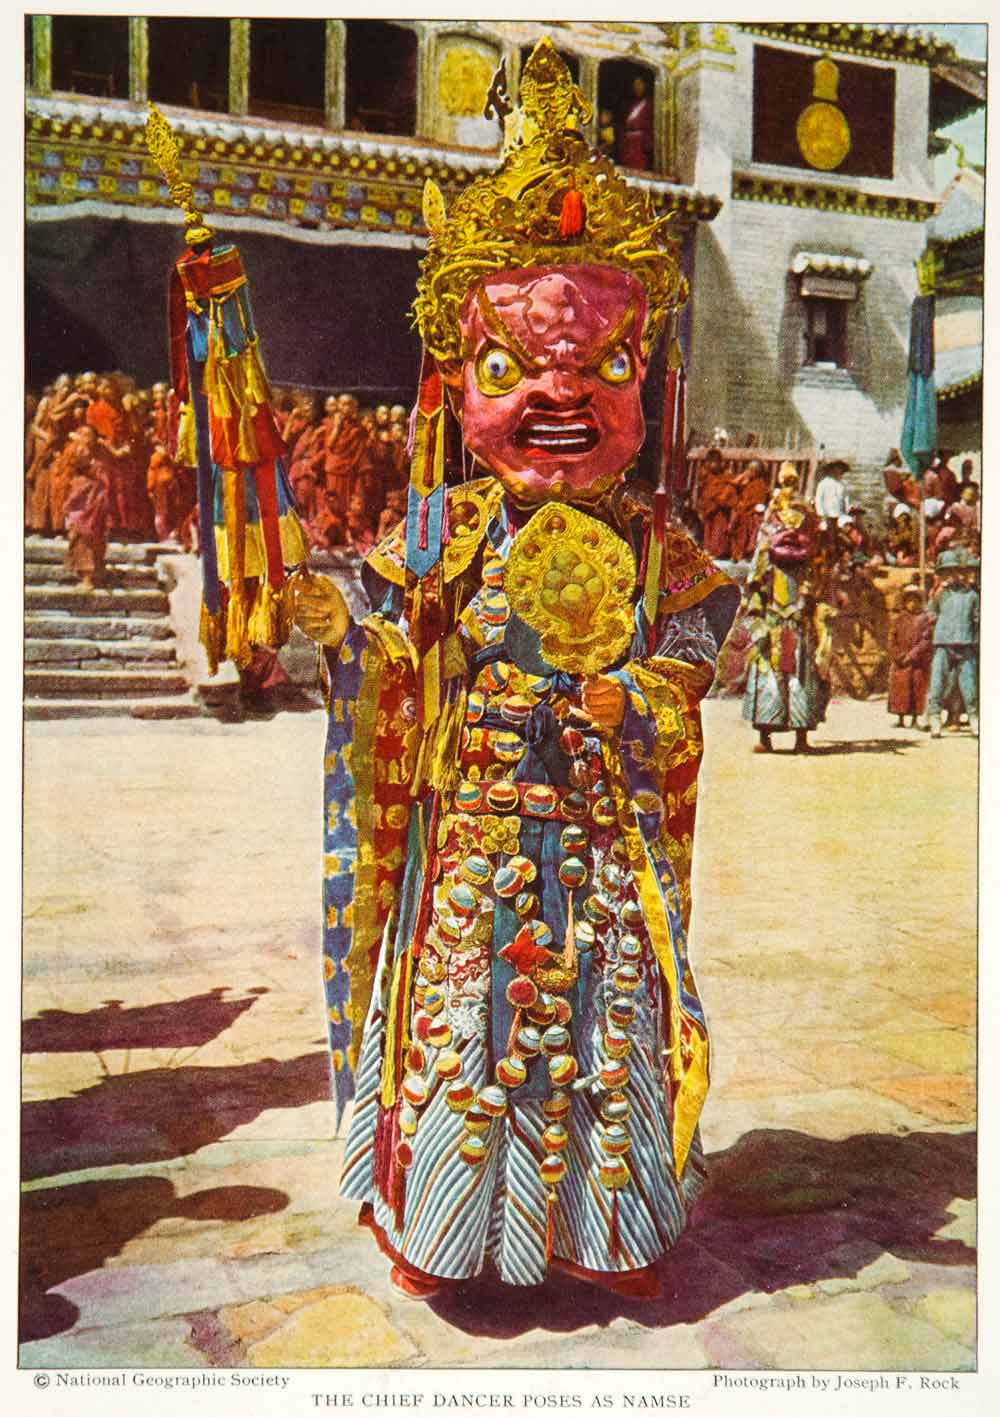 1928 Print God Wealth Tibetan Dancer Costume Traditional Fashion Historic NGMA2